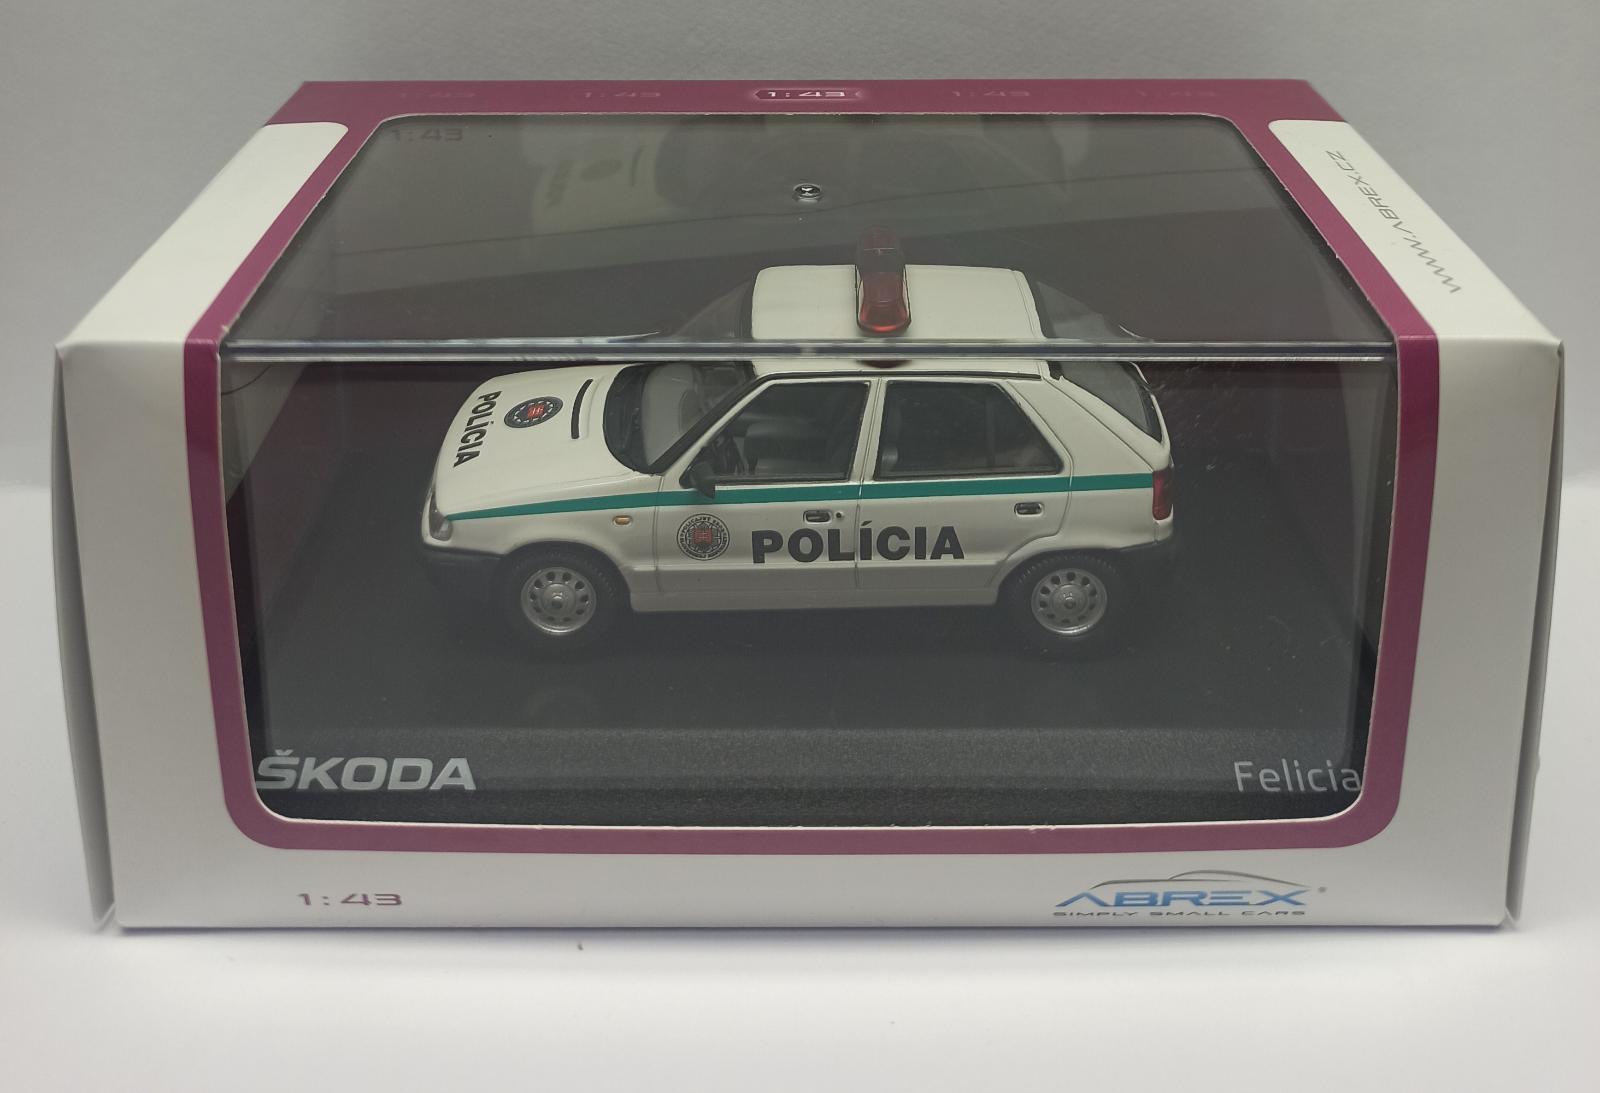 Predám zberateľský model Abrex 1:43 Škoda Felicia (1994) Policia SR - Modely automobilov